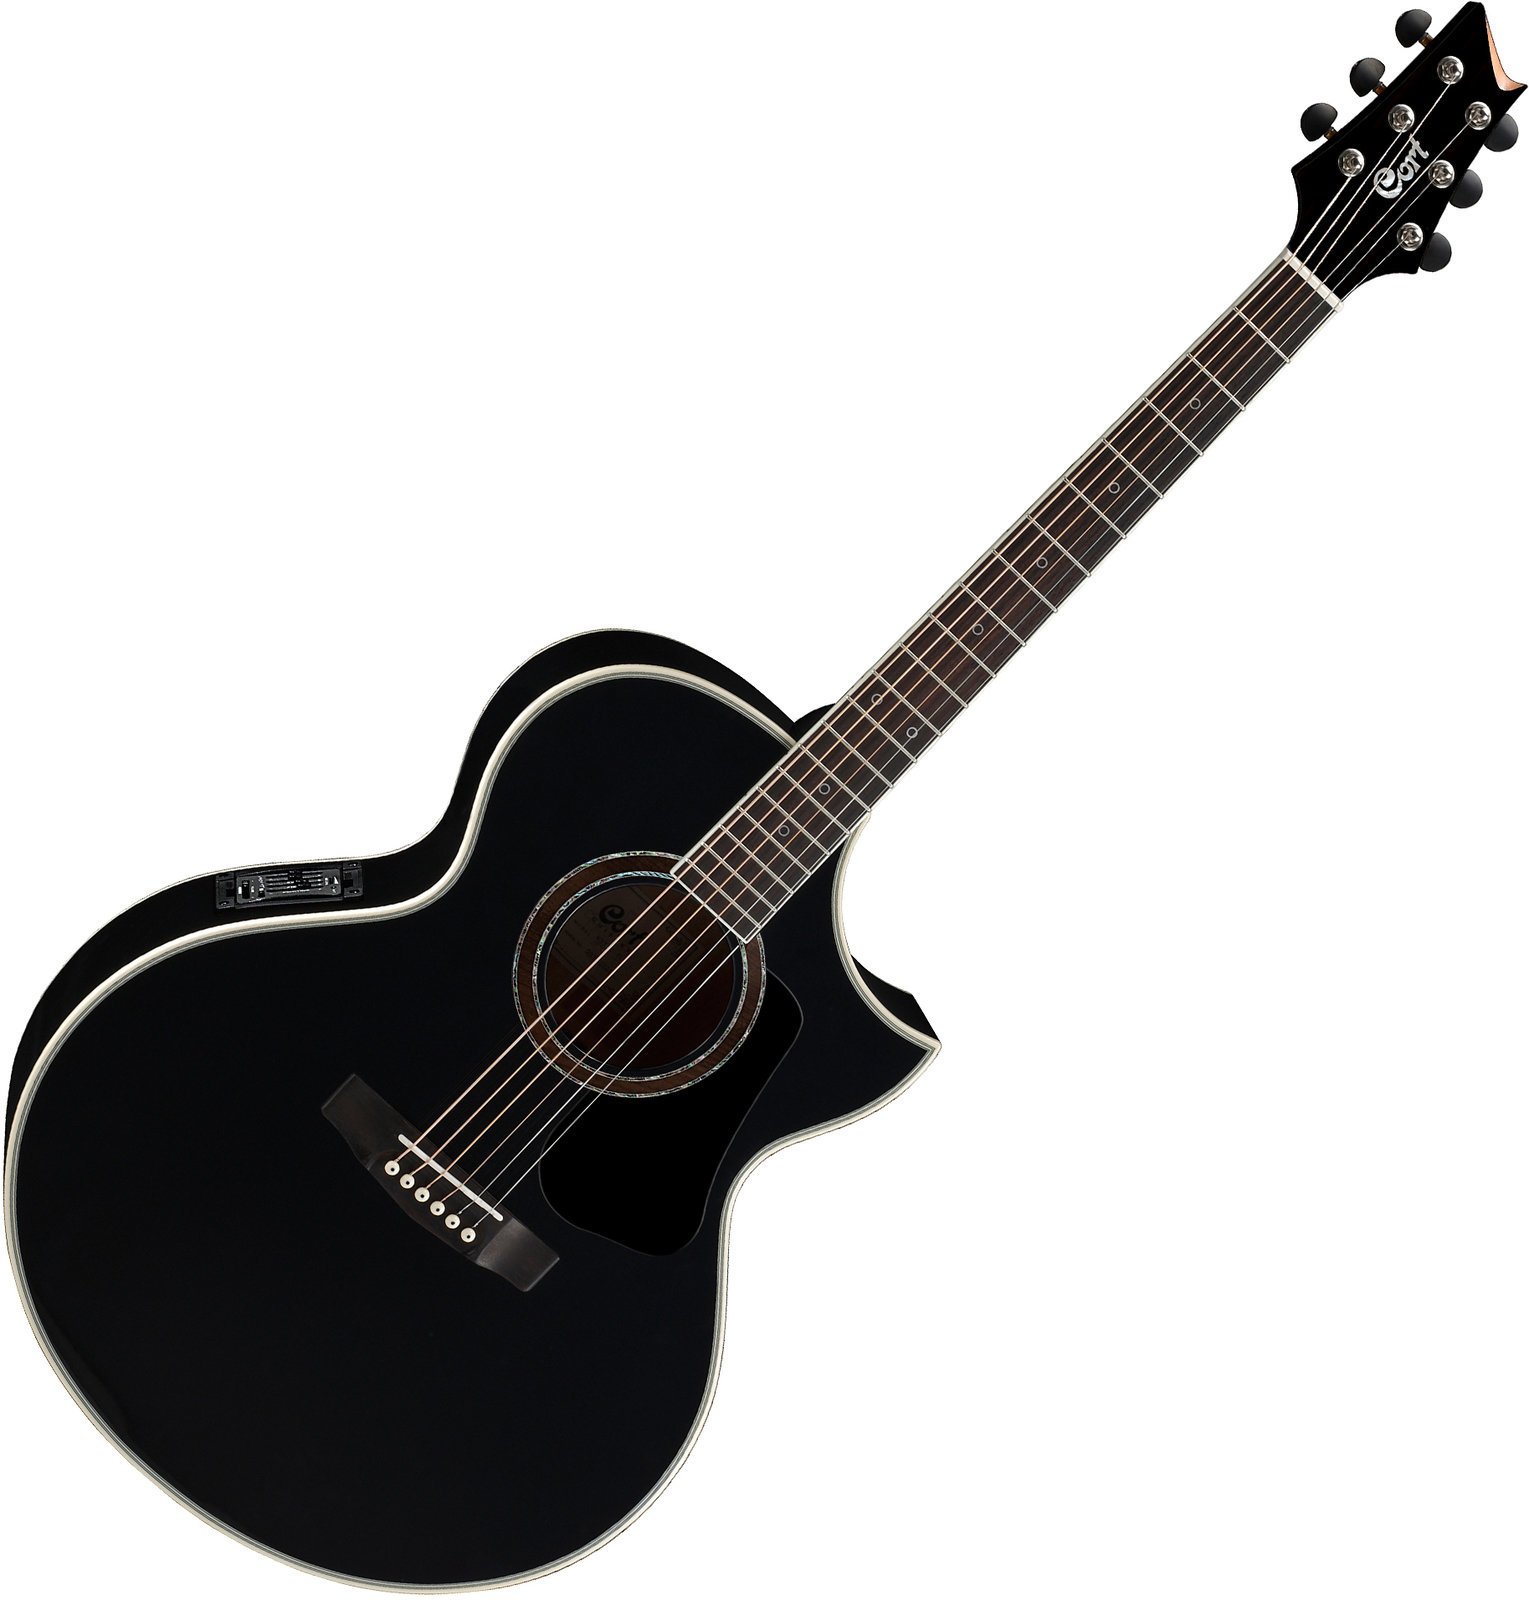 Ηλεκτροακουστική Κιθάρα Jumbo Cort NDX20 Μαύρο